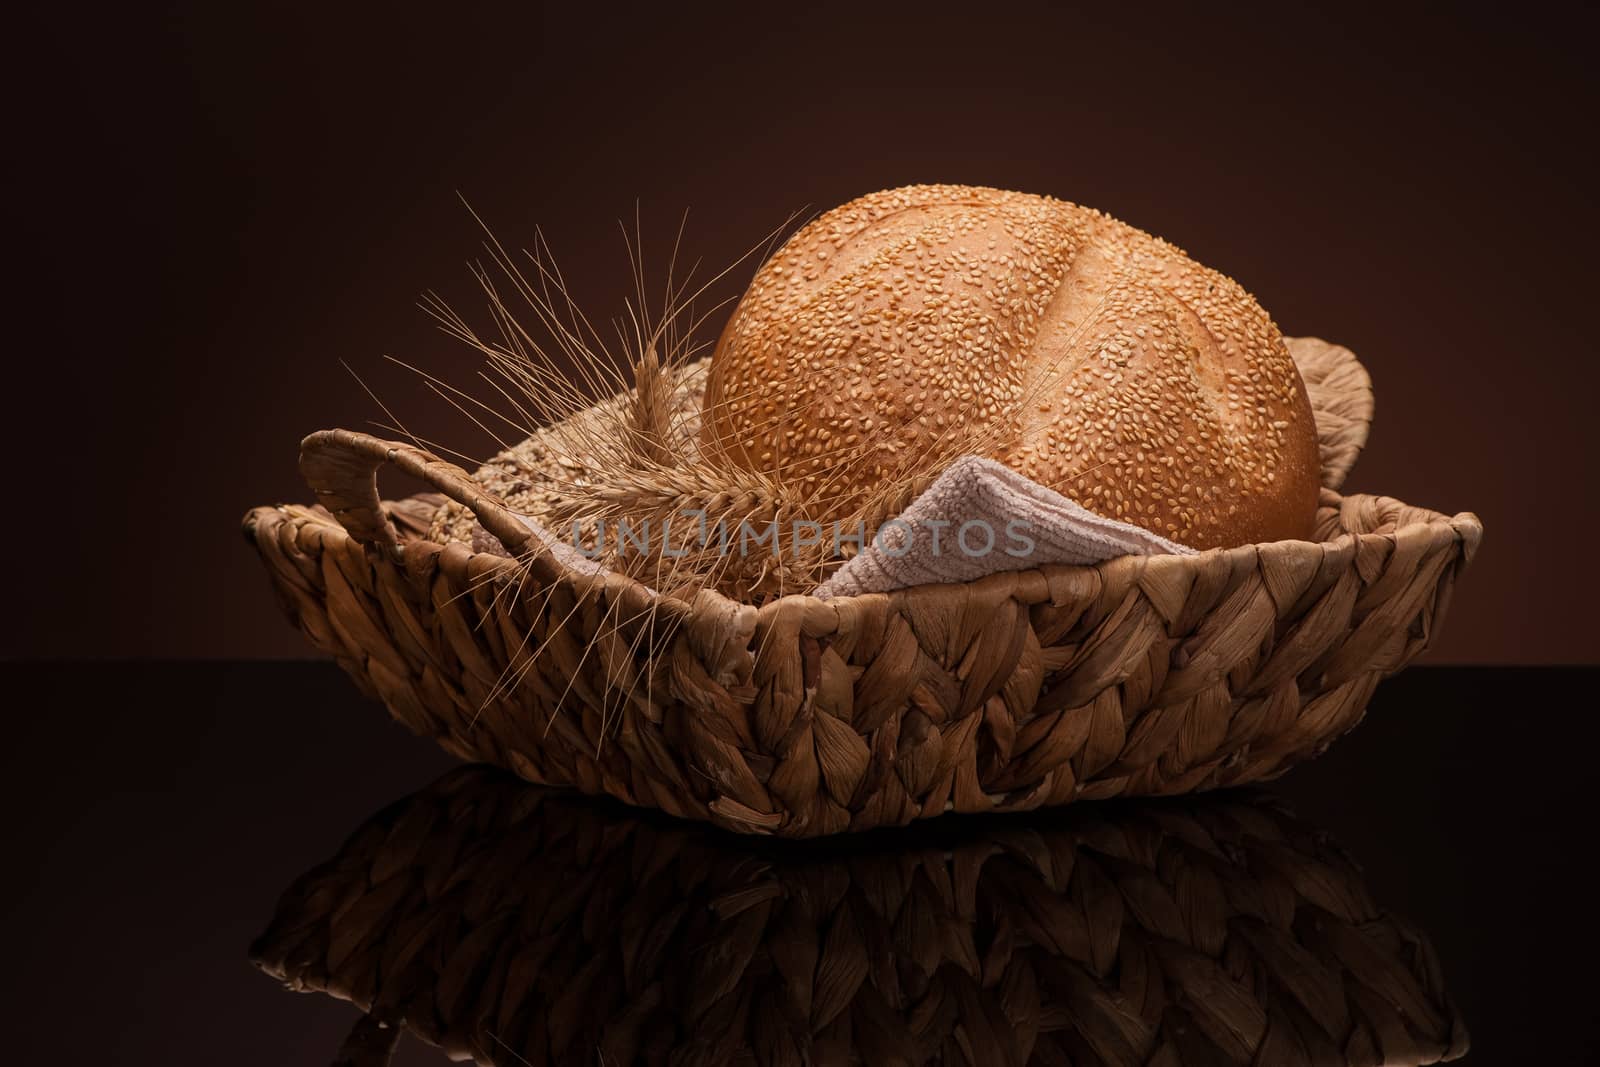 bread in a wicker basket on a dark background